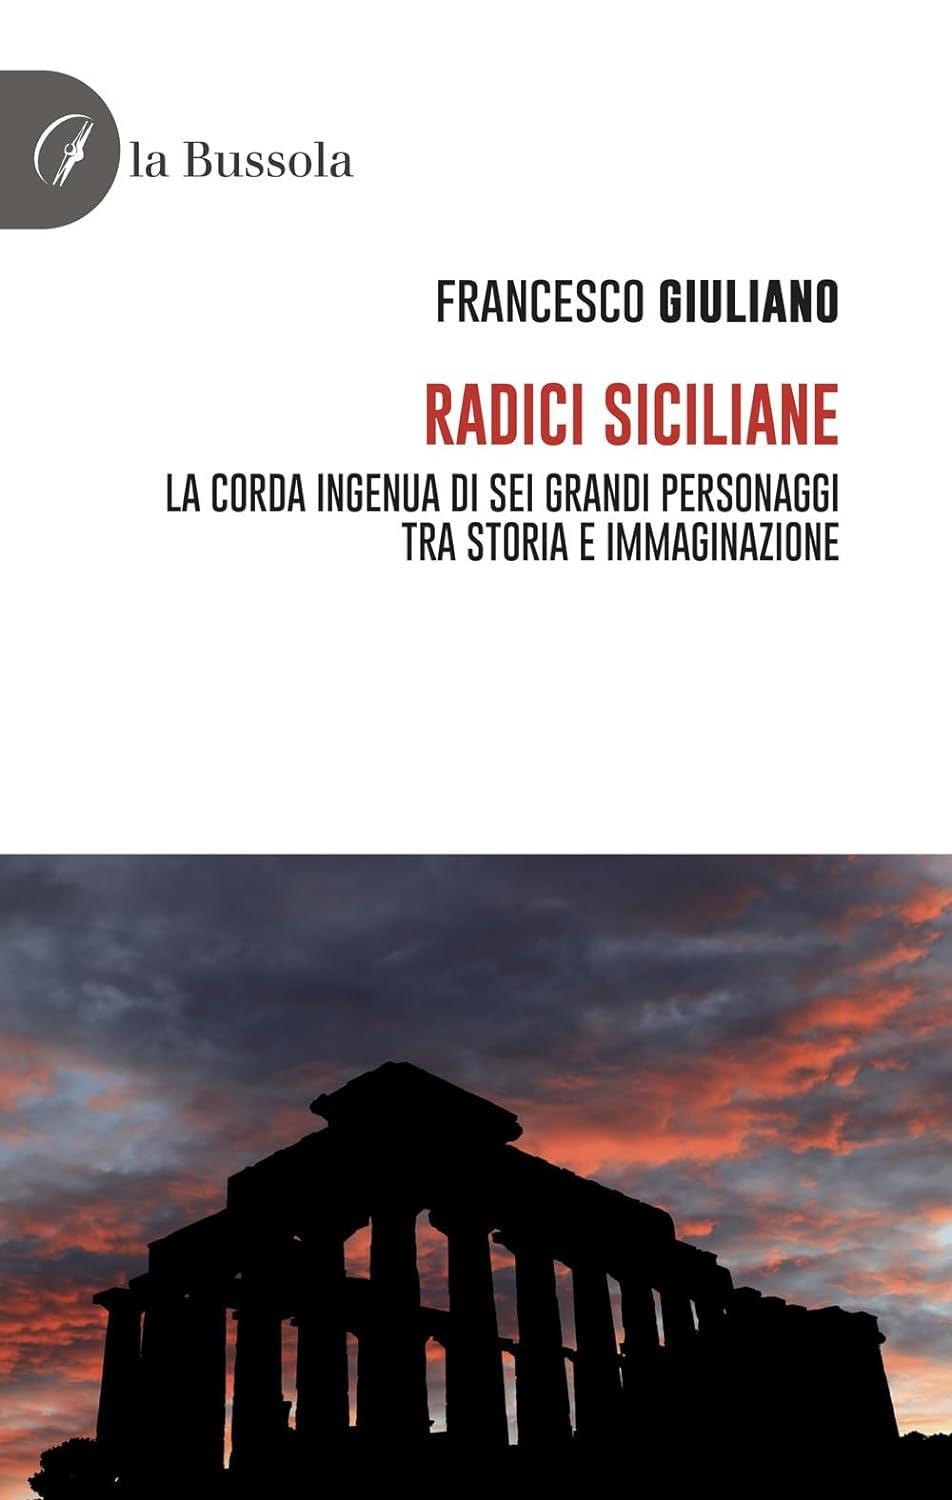 Libro "Radici siciliane" di Francesco Giuliano